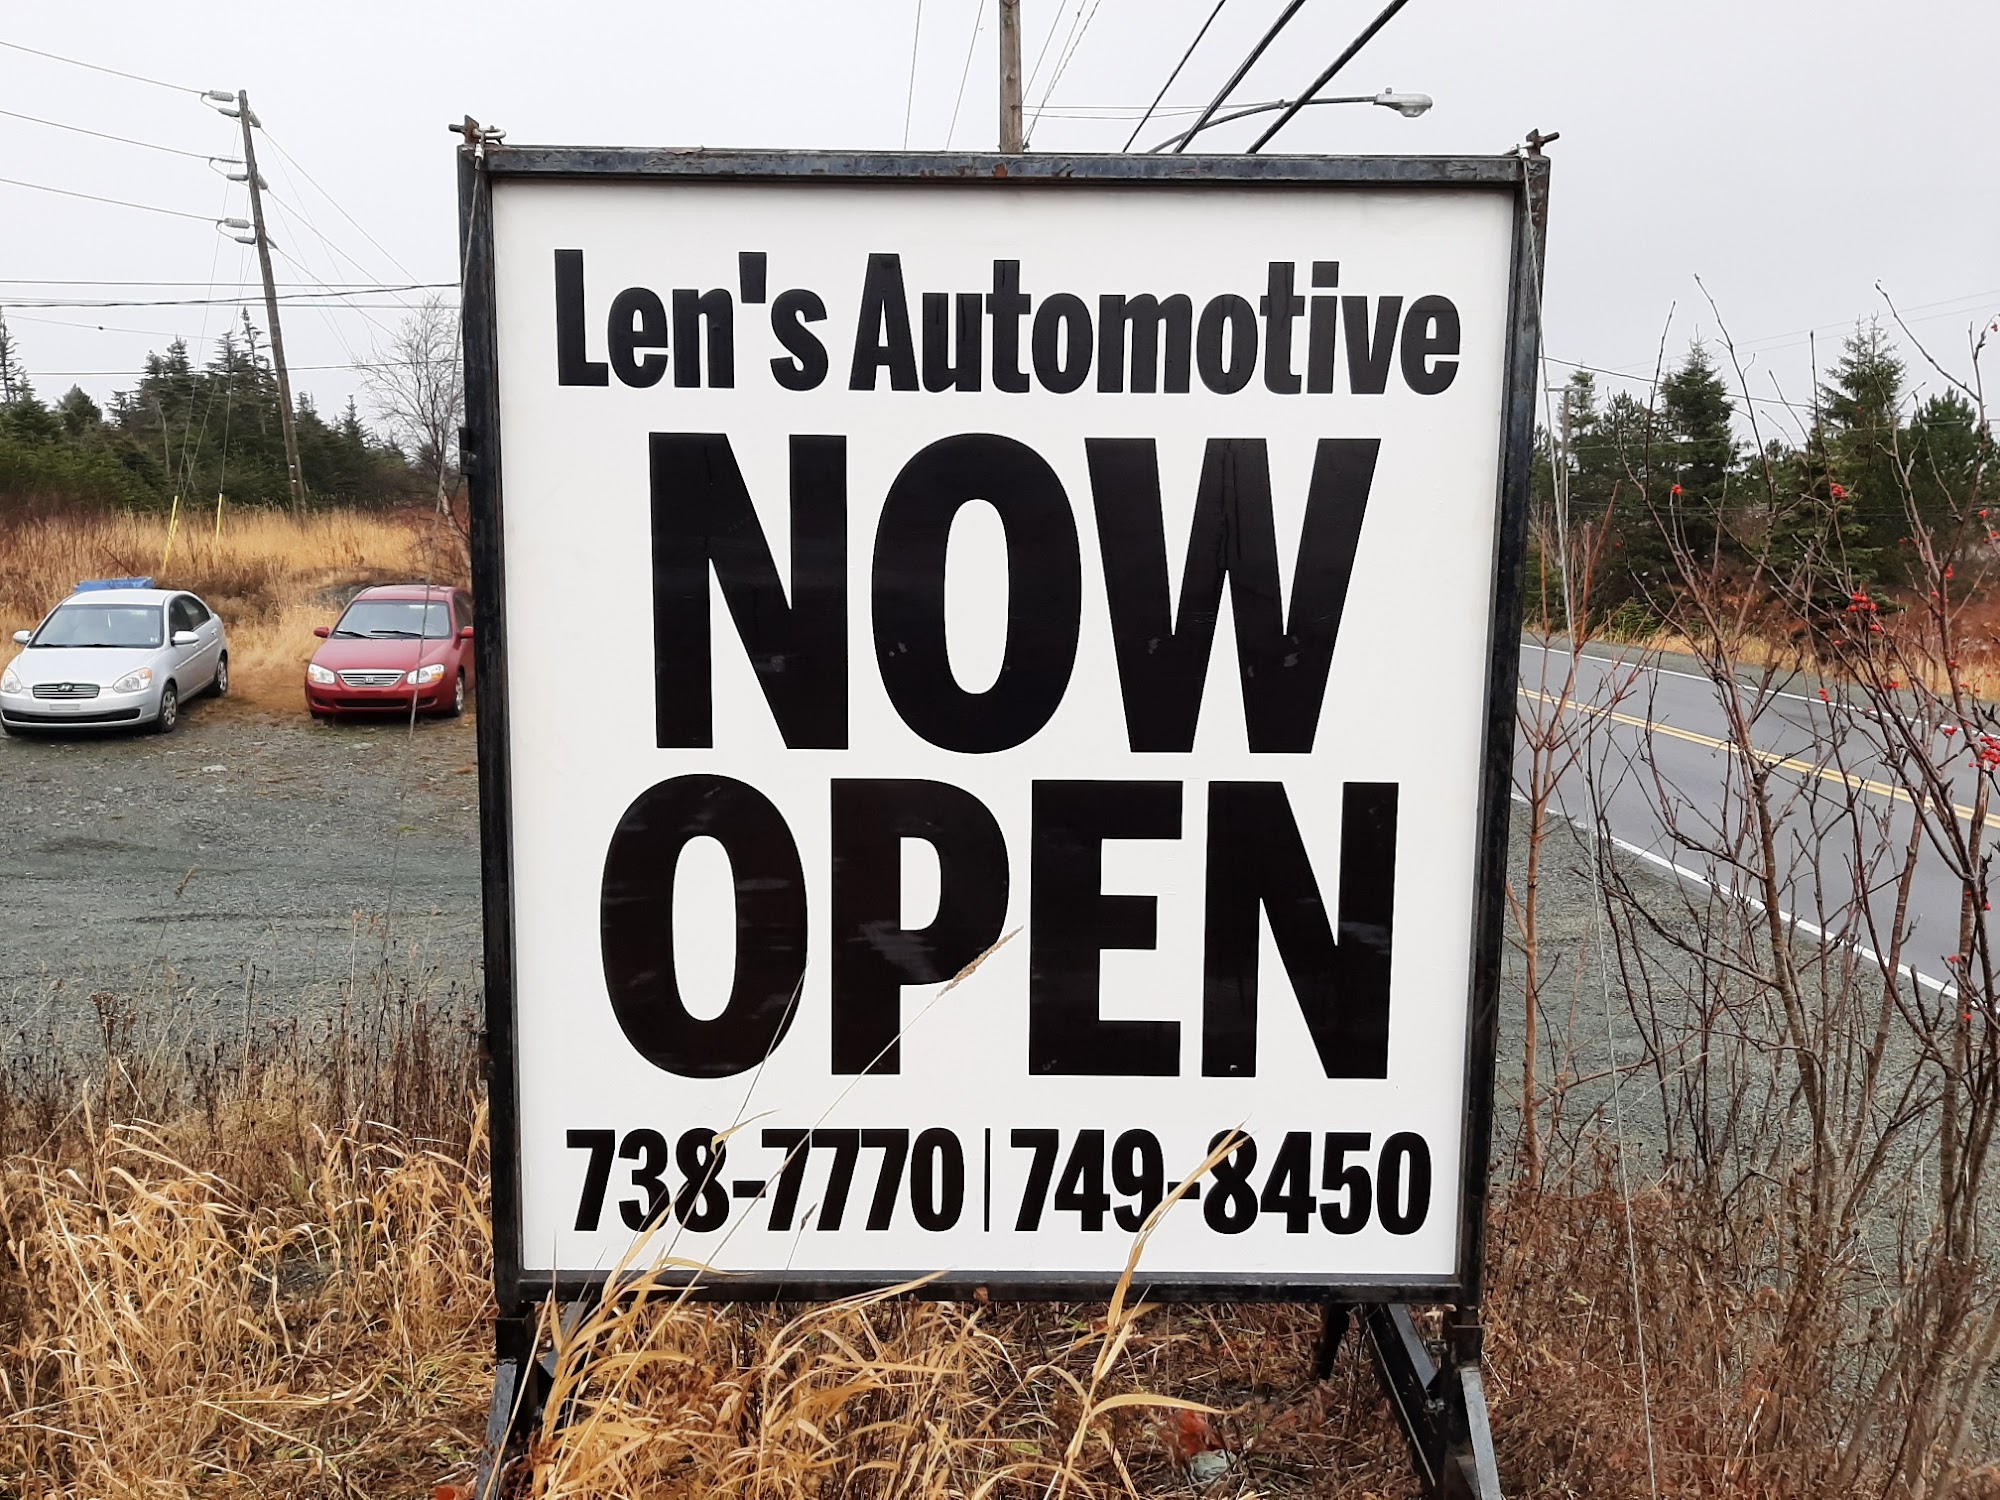 Len's Automotive Svc 670 Blackmarsh Rd, St. John's Newfoundland and Labrador A1E 4V3